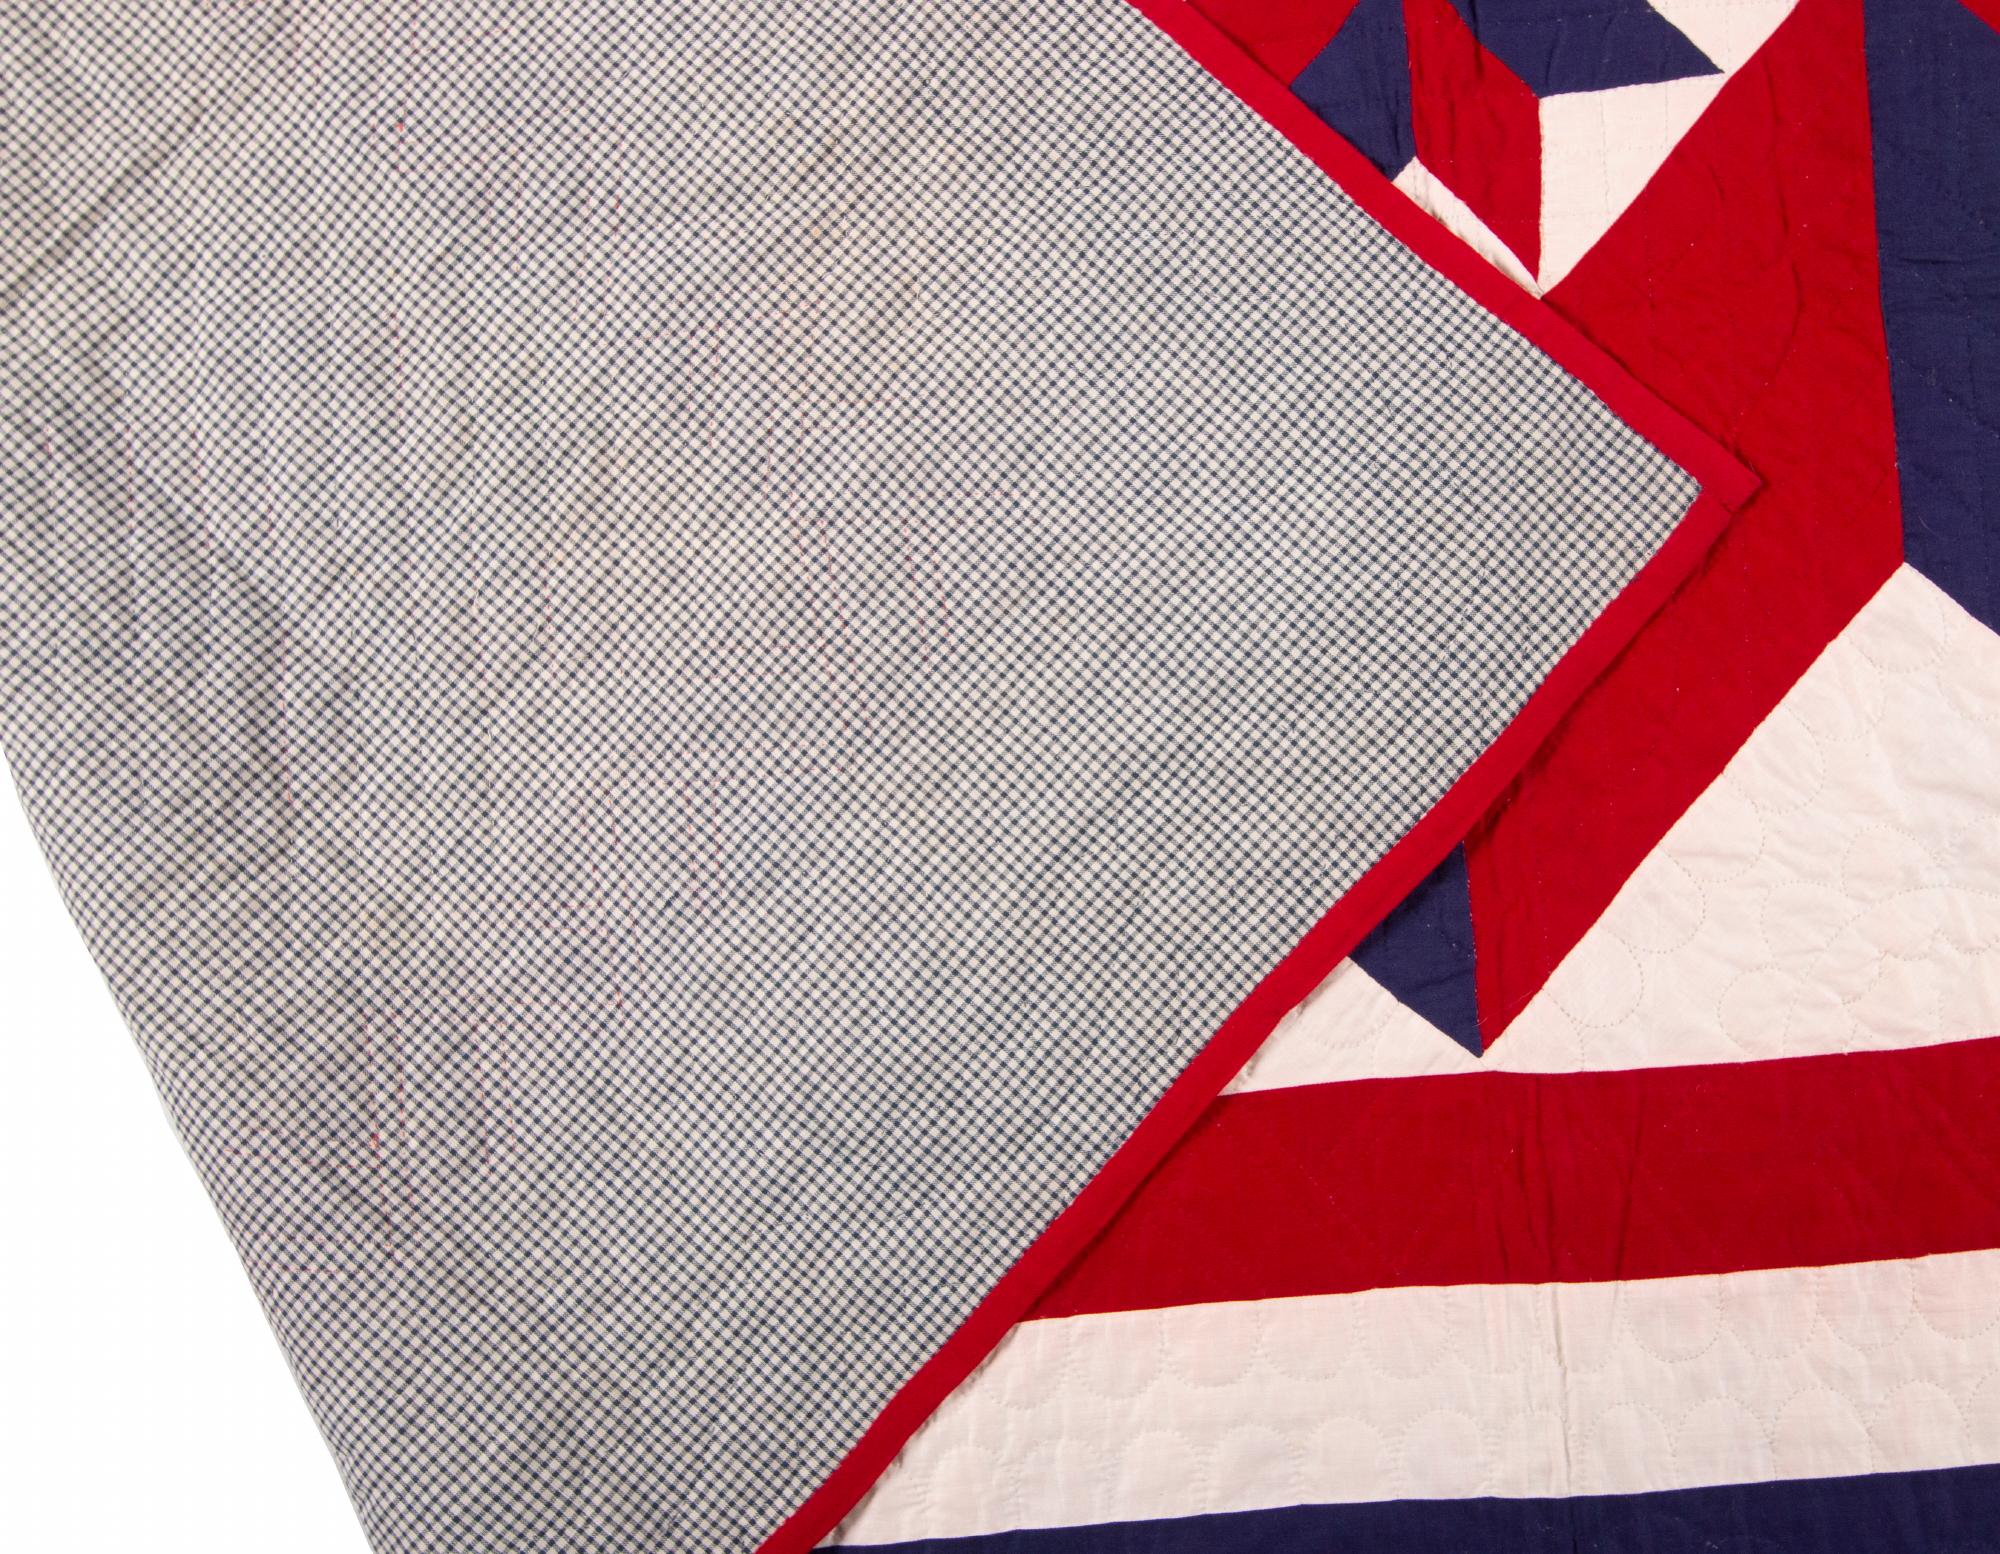 Broken Star Muster, patriotischer amerikanischer Quilt mit 13 Sternen, Lancaster County, Pennsylvania, um 1915-1920

Quilt mit dem Muster Broken Star in den Farben Rot, Weiß und Blau mit einer karierten Rückseite. Gefunden in Lancaster County,